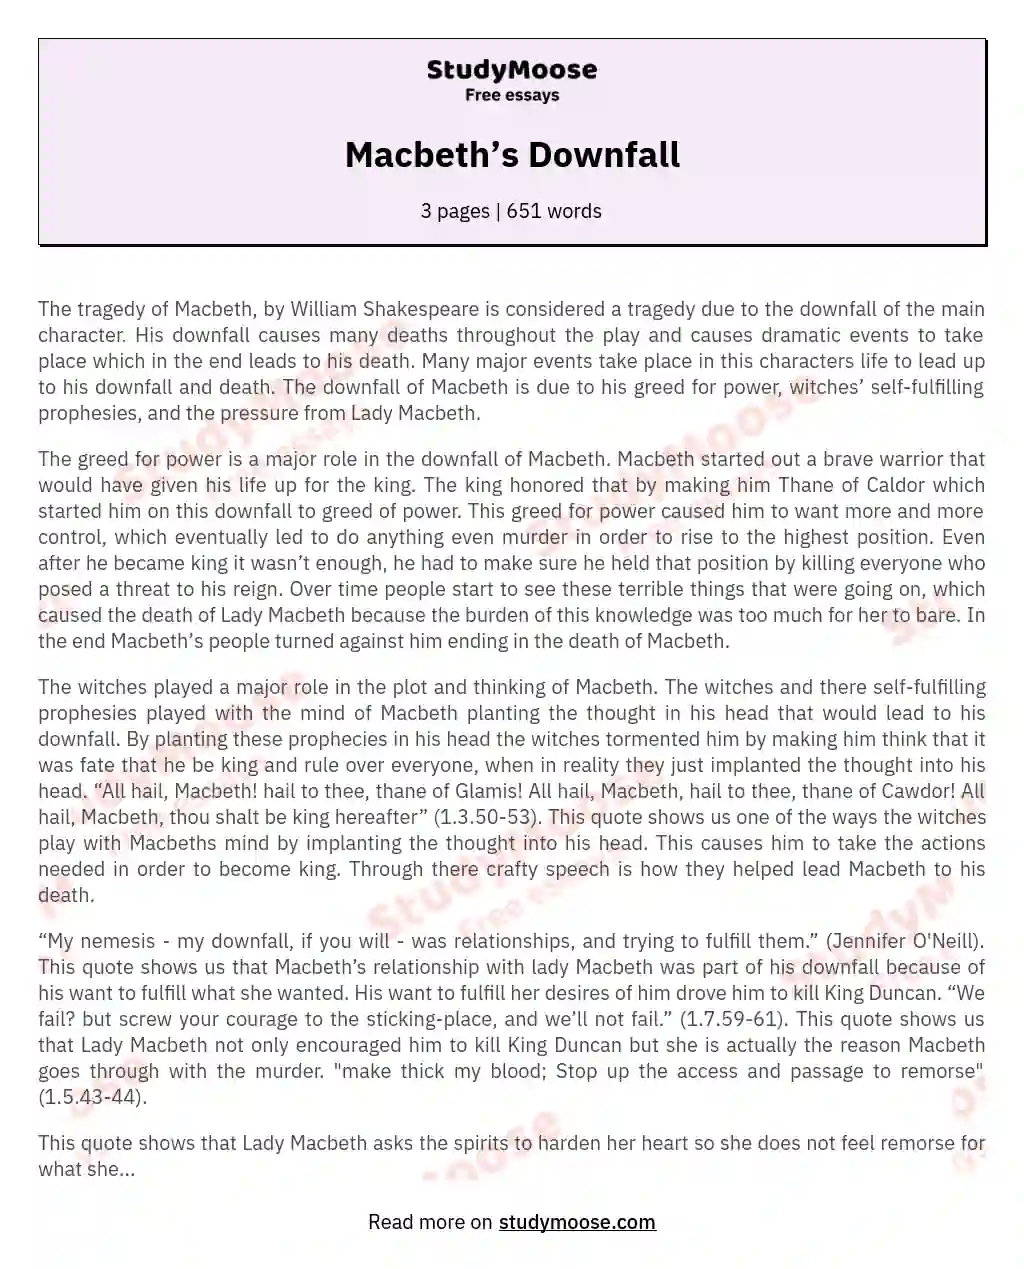 Macbeth’s Downfall essay